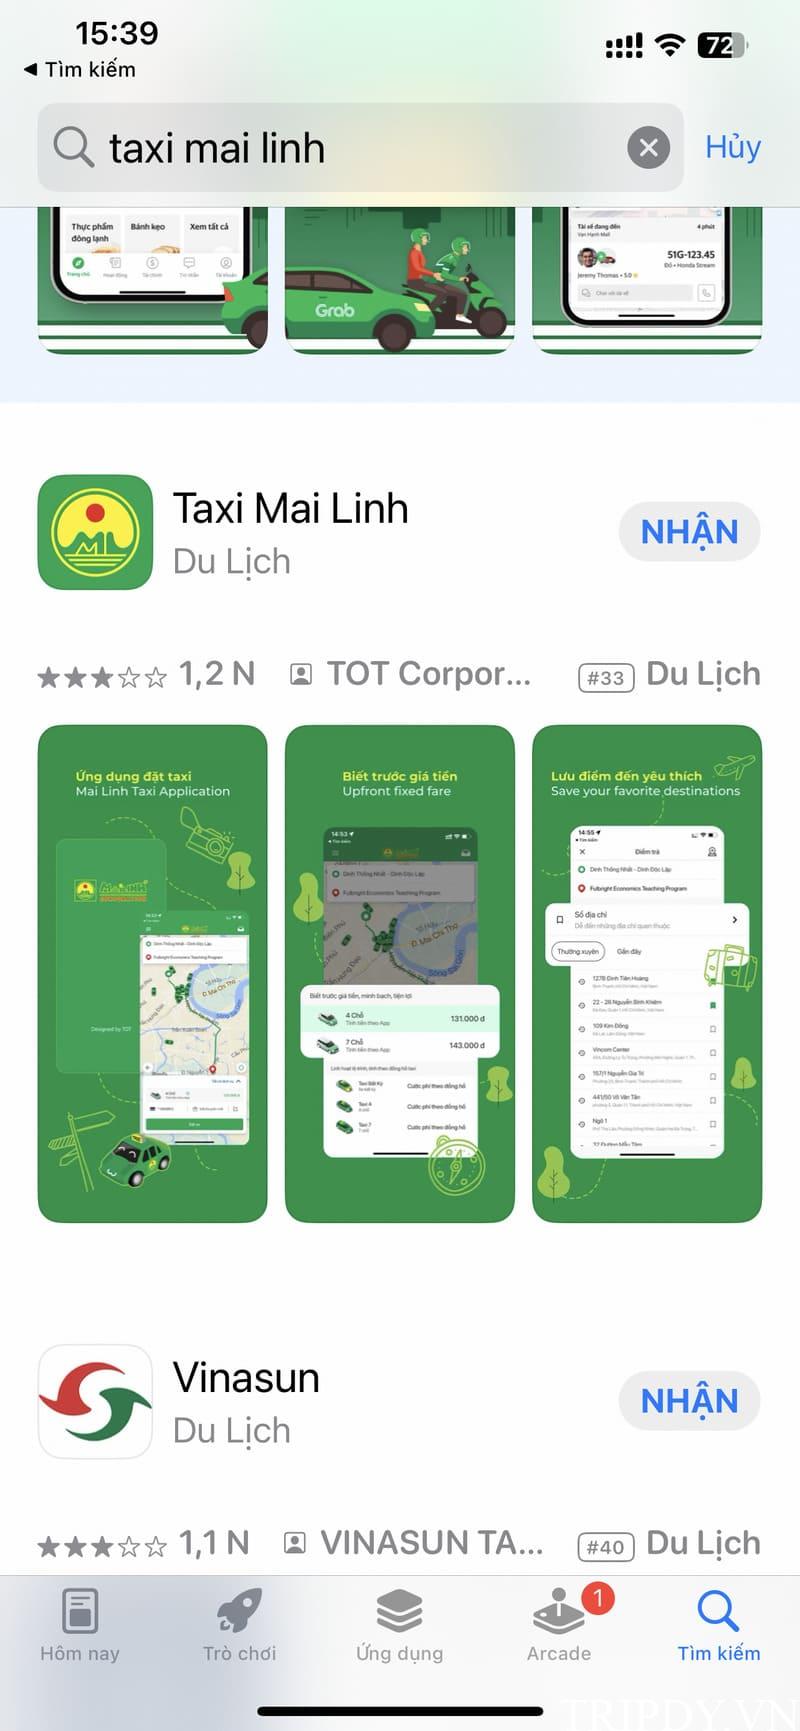 Taxi Mai Linh Cao Bằng: Số điện thoại tổng đài, giá cước km